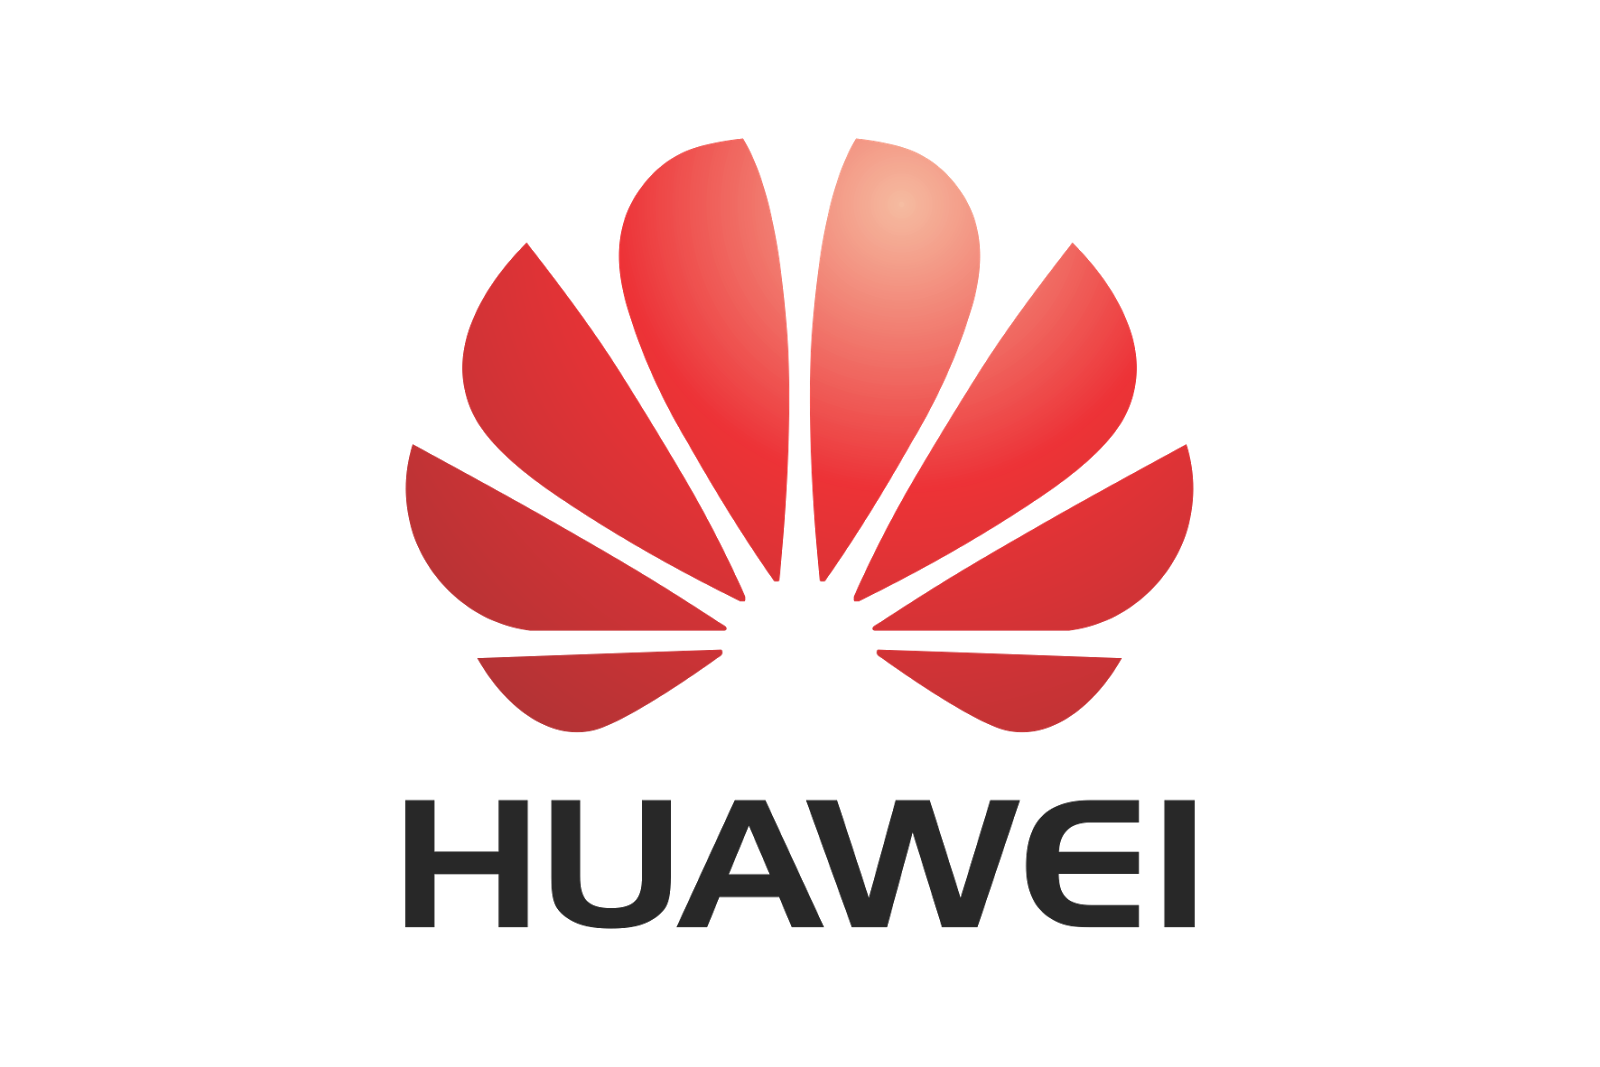 huawei-logo-communication-13.png